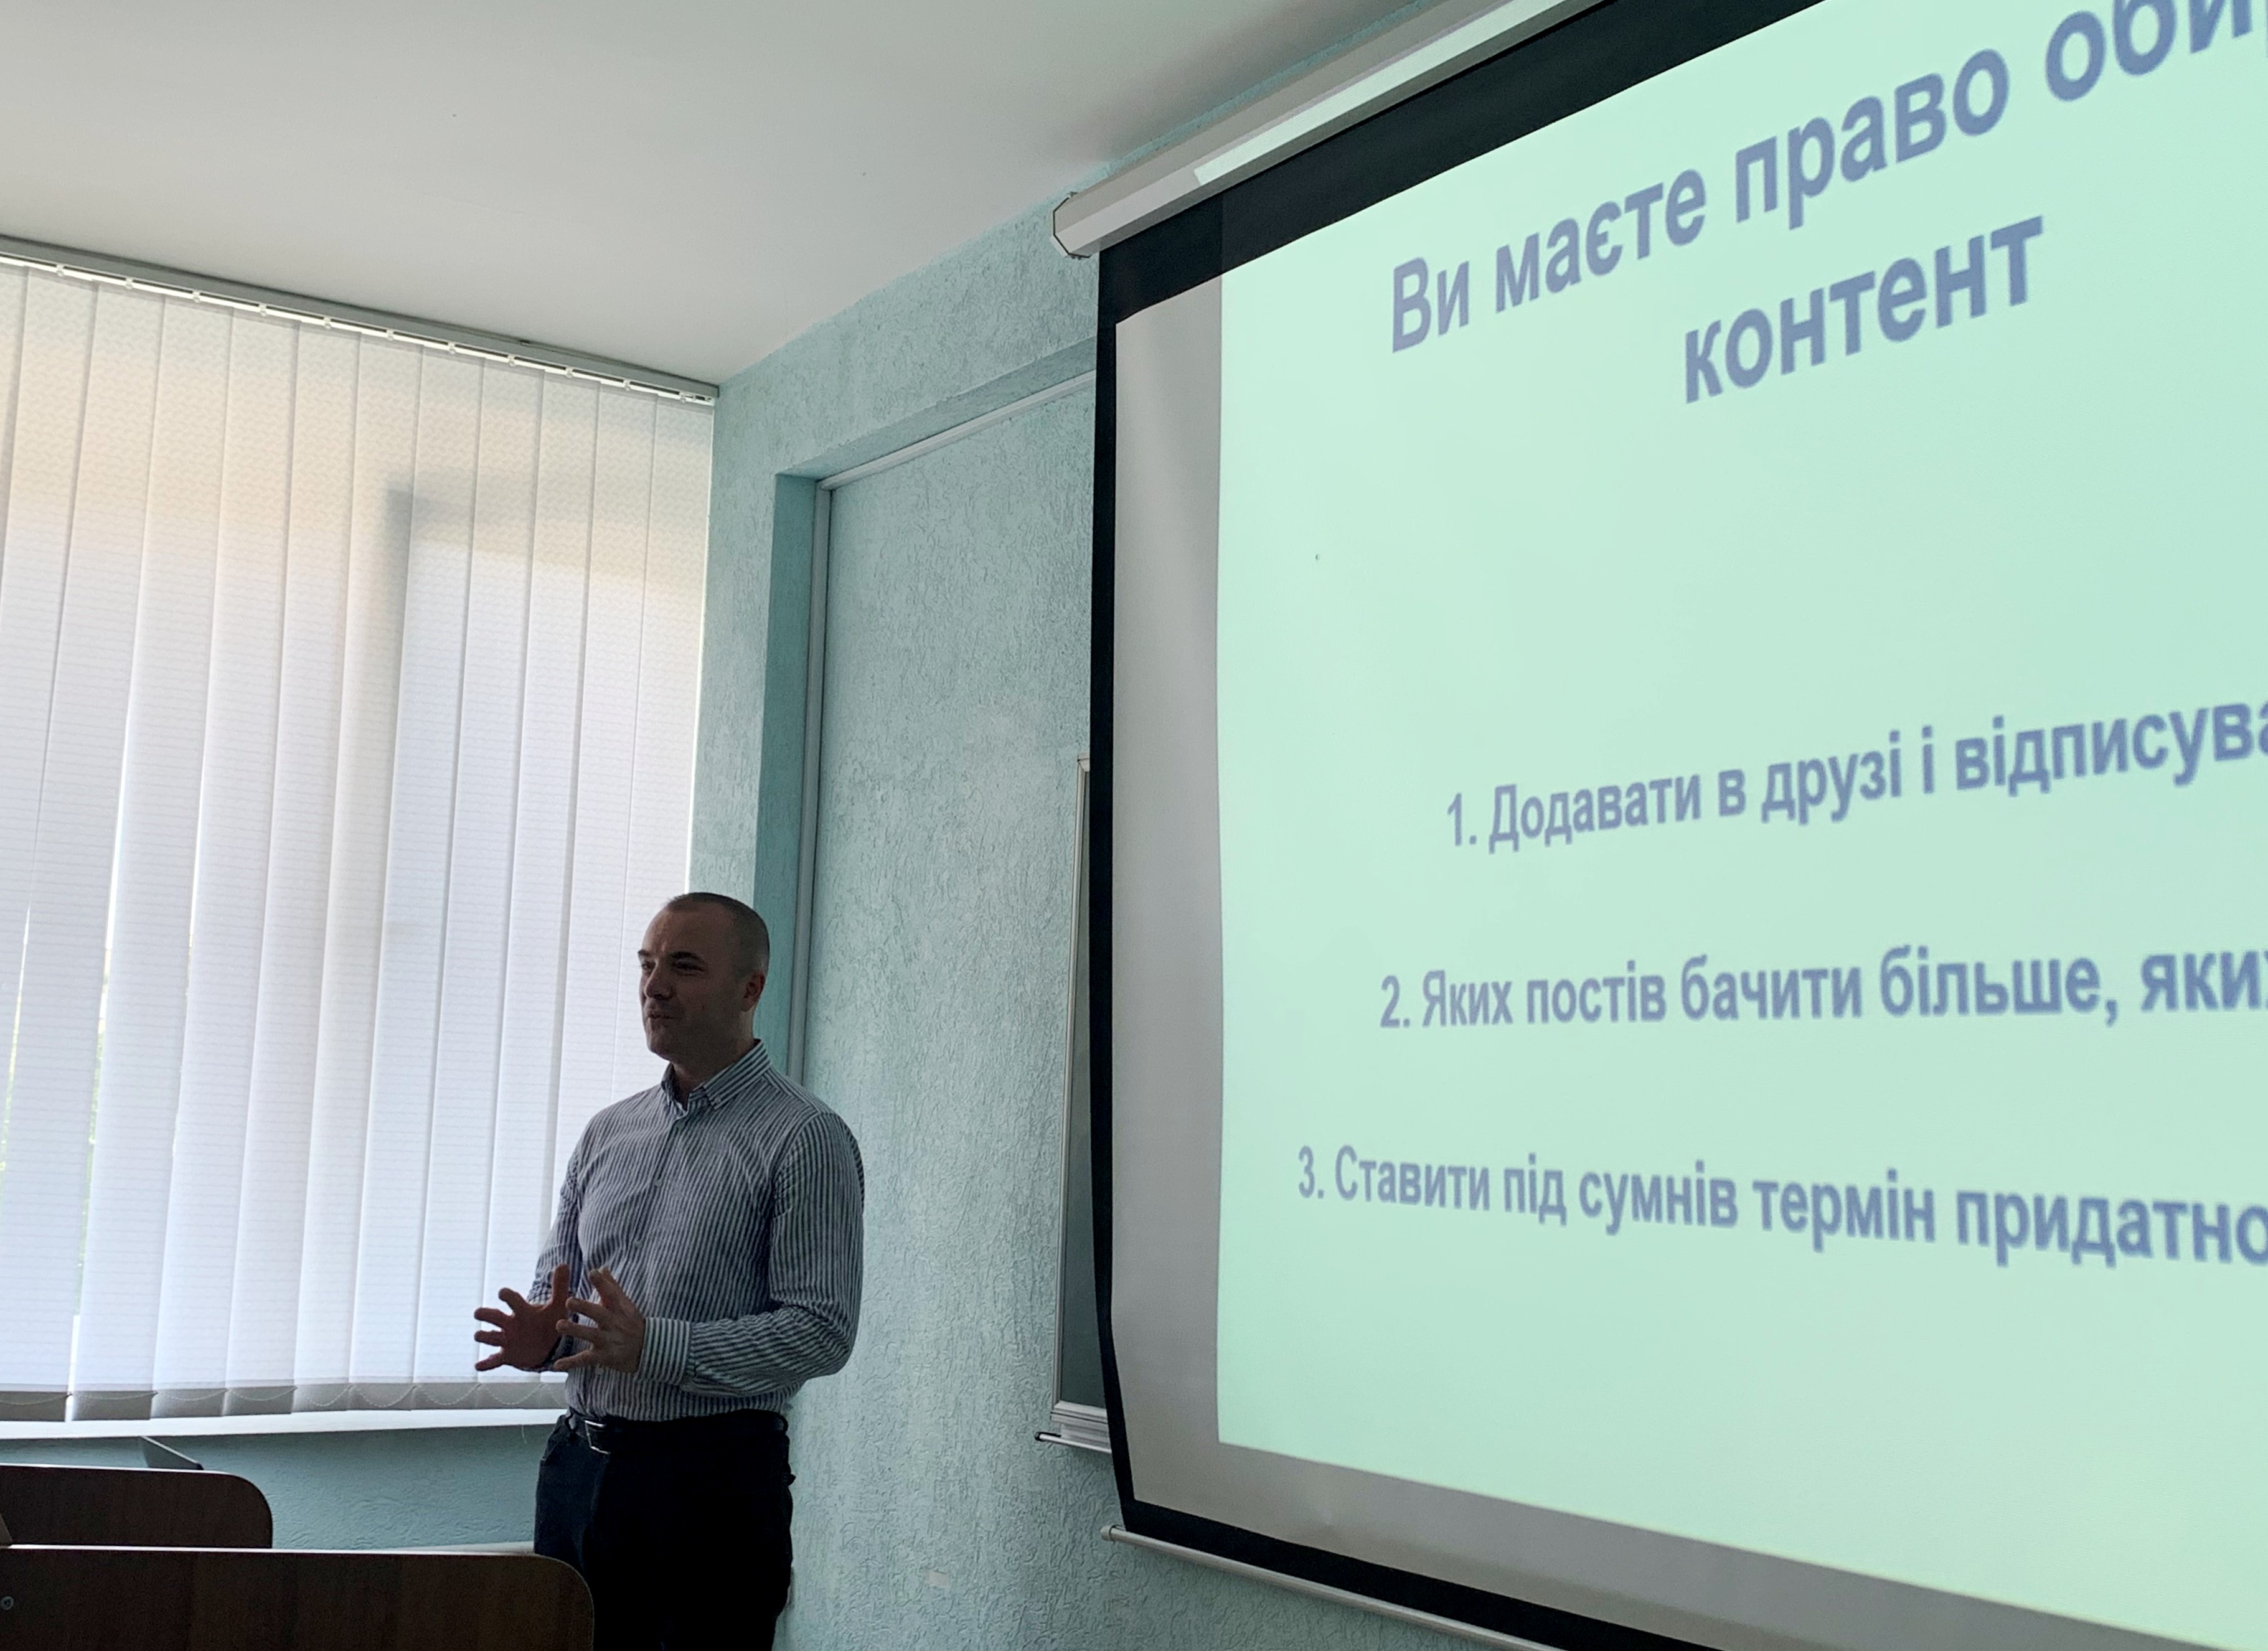 Віталій Голубєв розповідає про контент у соціальних мережах